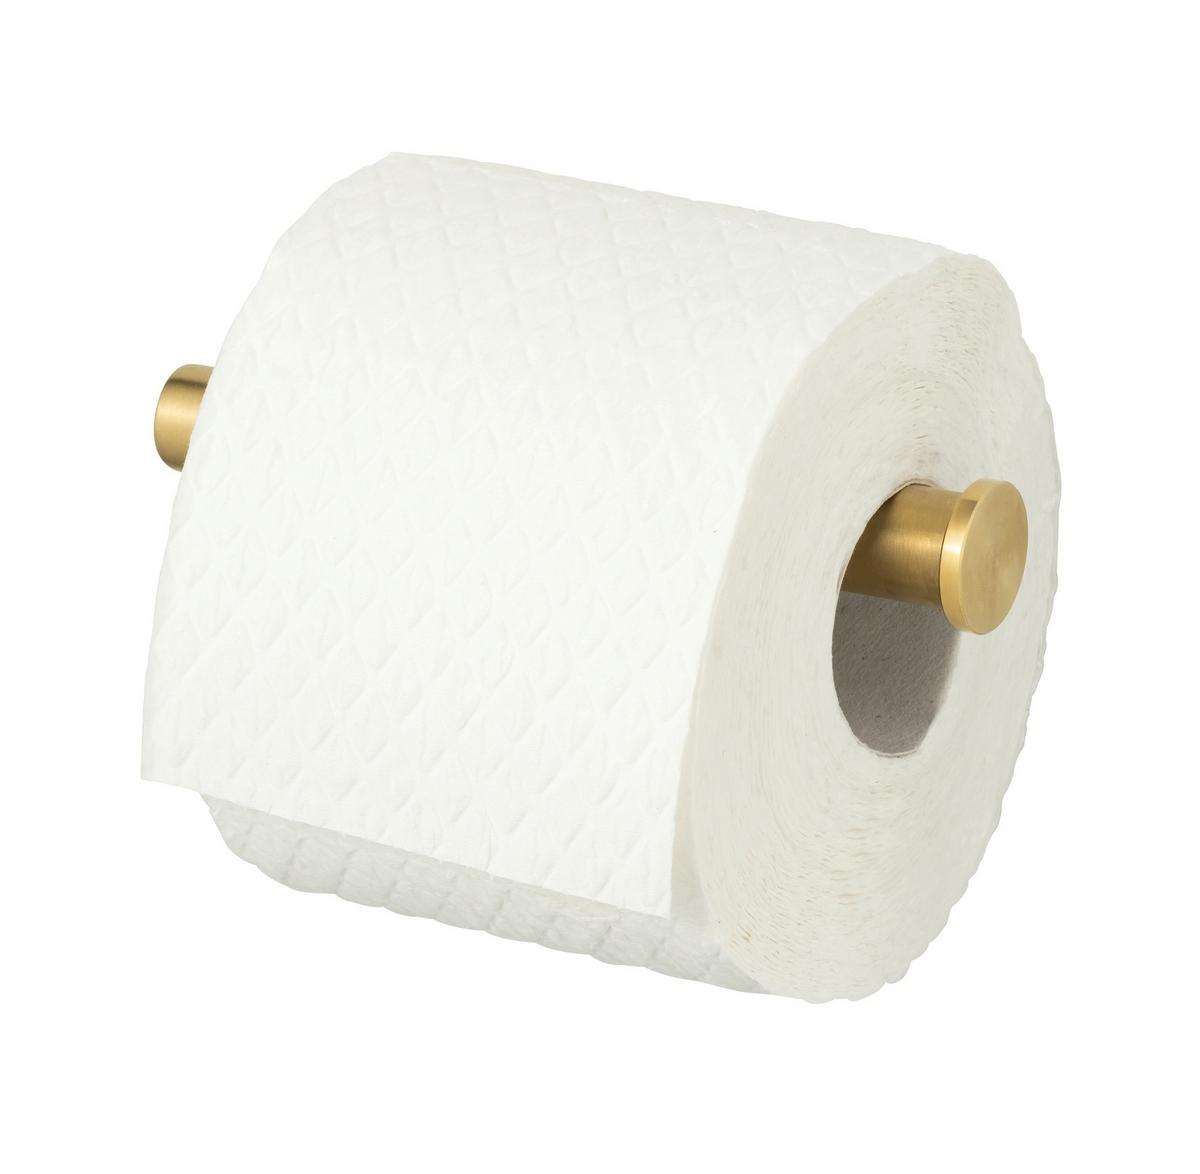 Toilettenpapierhalter in Goldfarben mömax kaufen ➤ online